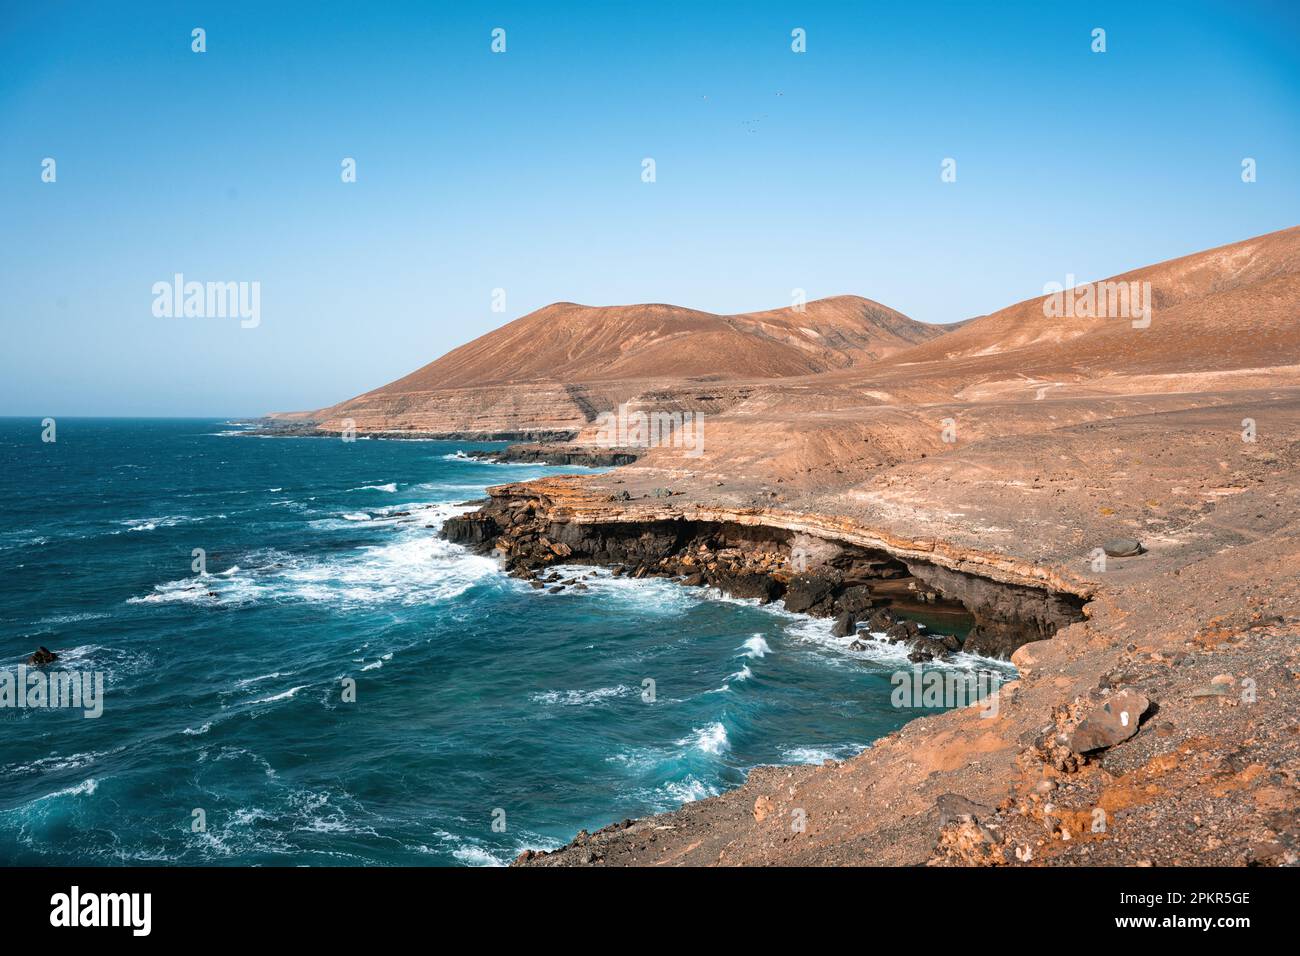 Vue imprenable sur une côte rocheuse baignée par un magnifique océan bleu. Playa del Aguila (Plage des Eagles) Fuerteventura, Îles Canaries, Espagne. Banque D'Images